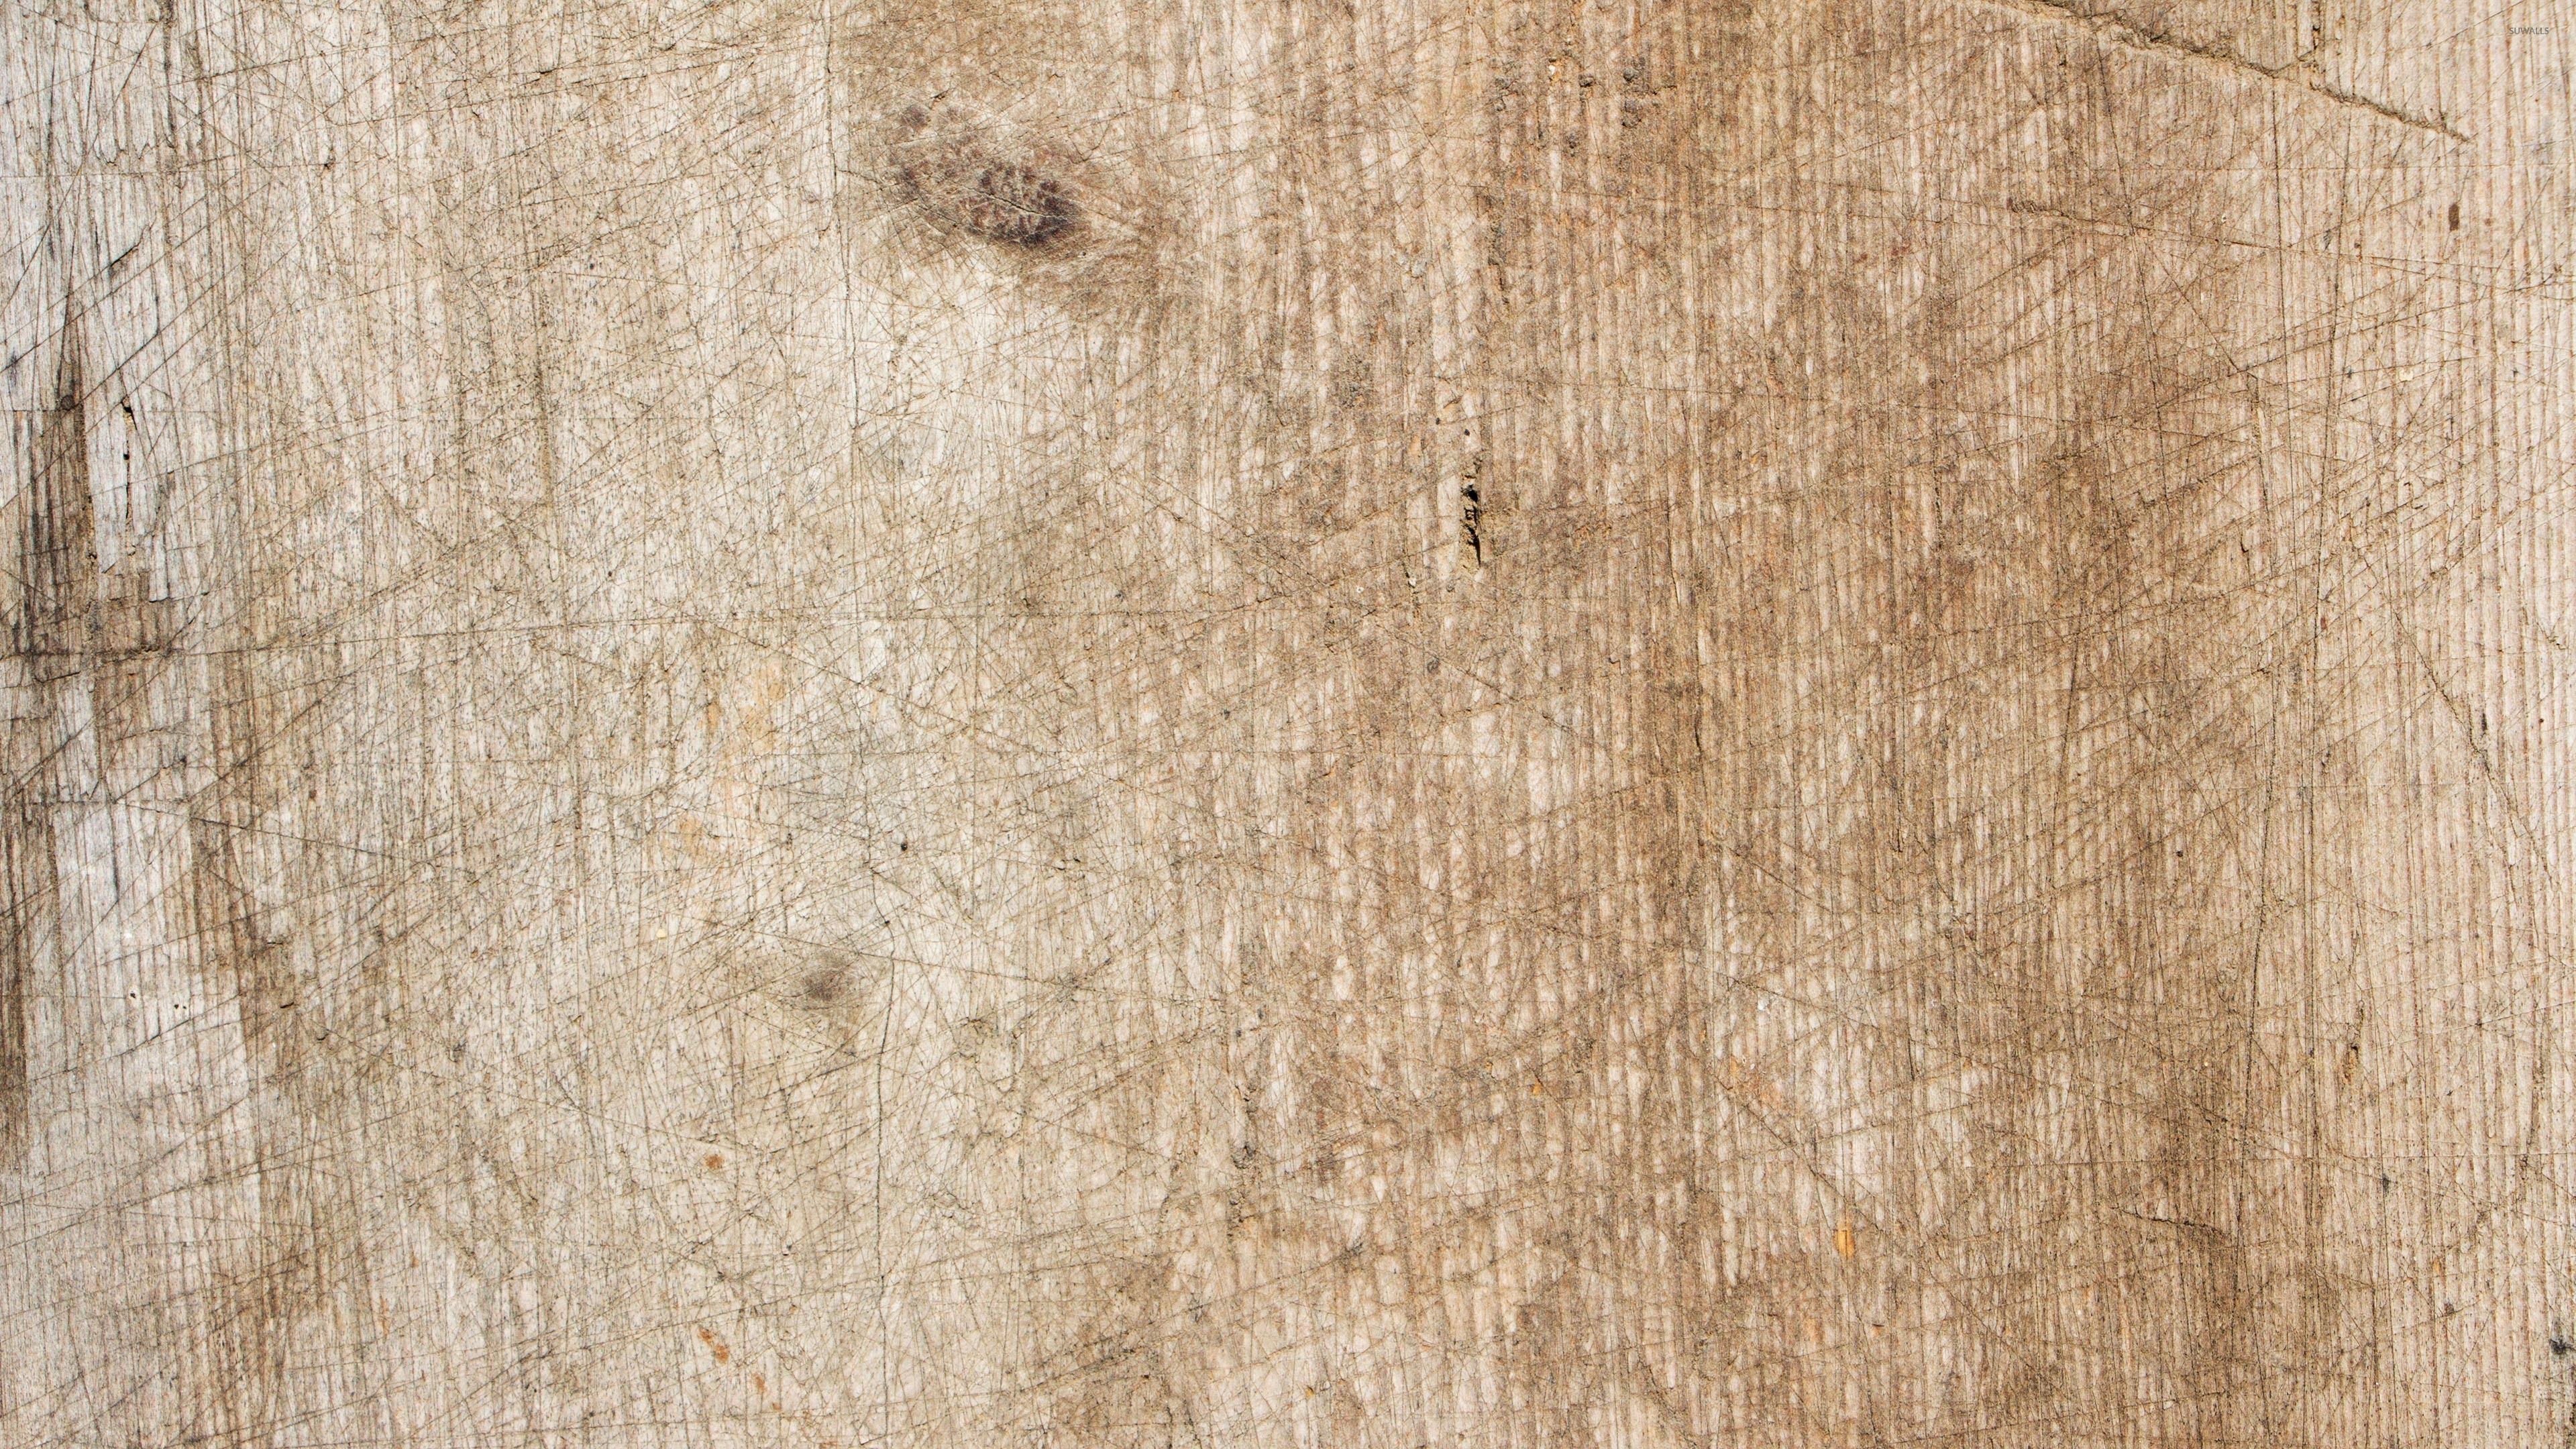 Fondo de pantalla de Scratches On Old Wood - Old Wood (# 135128) - HD Wallpaper